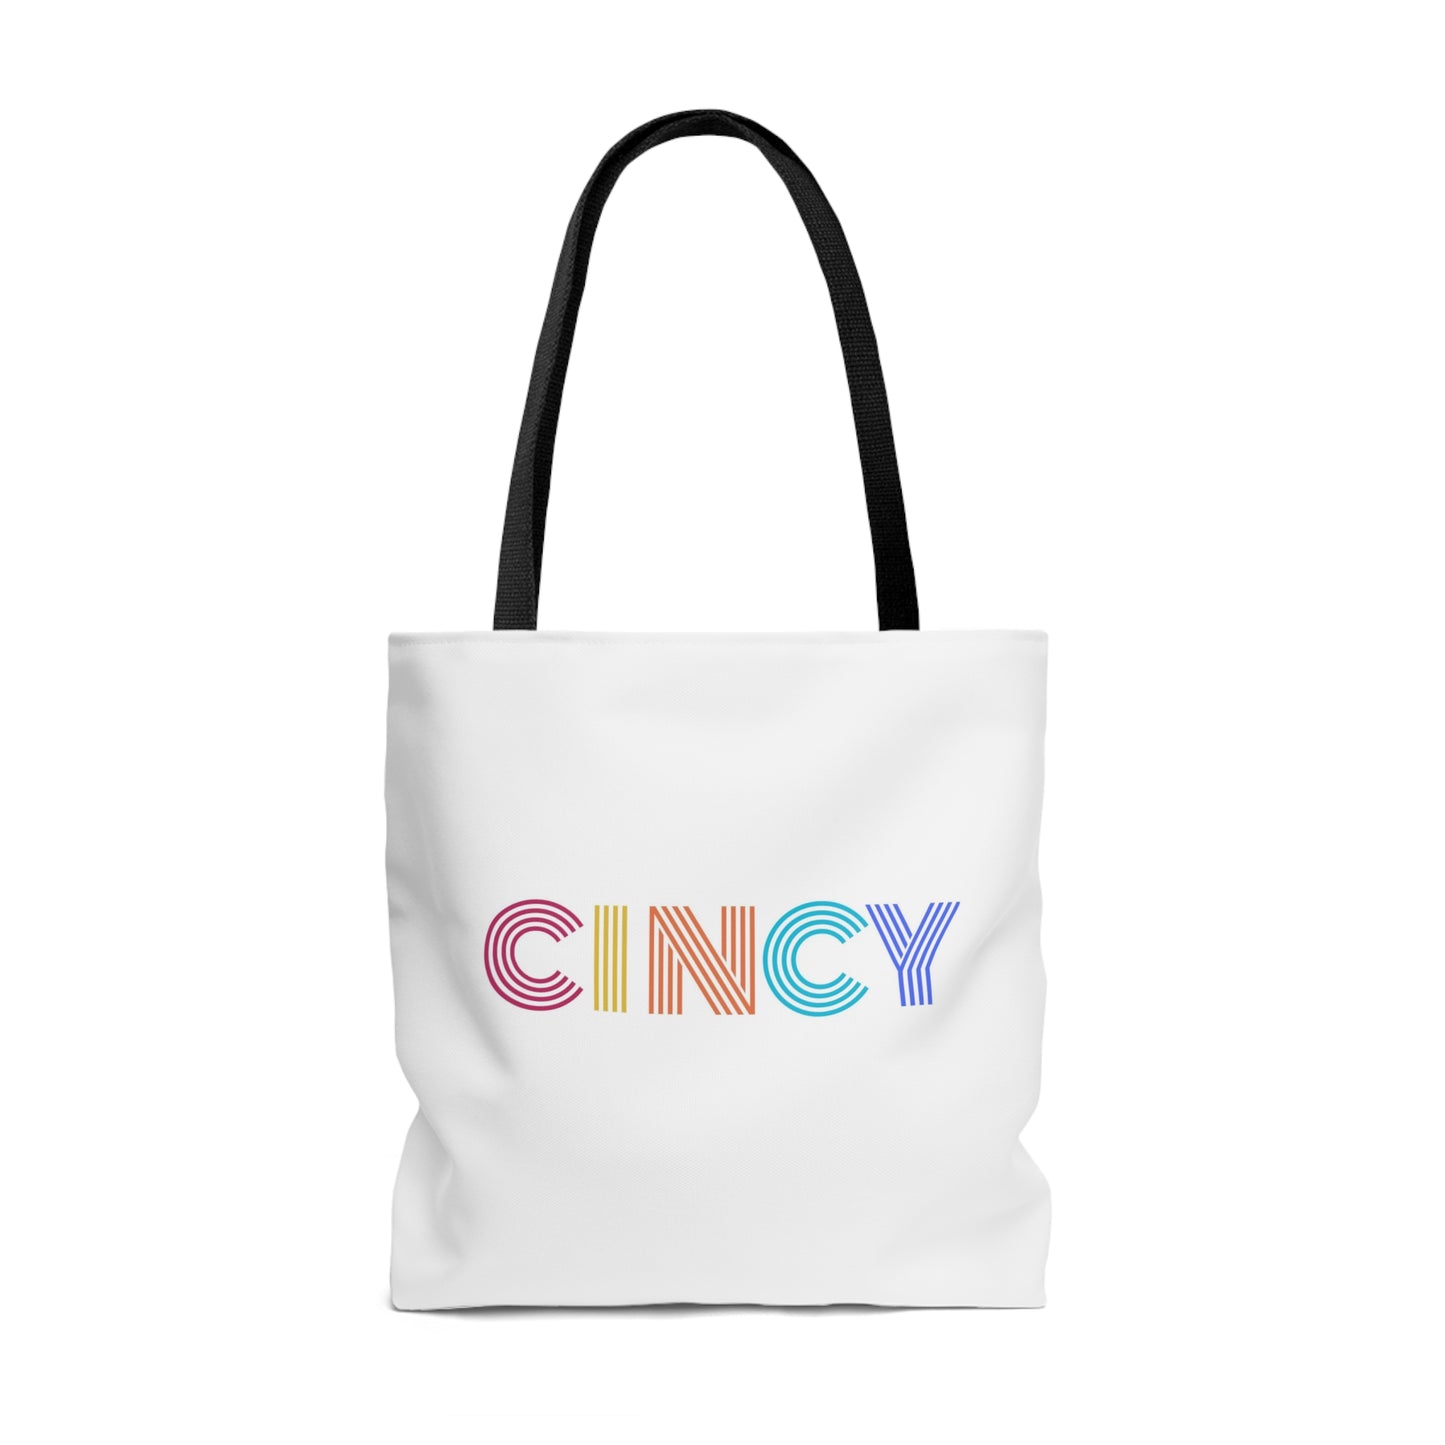 CINCY Tote Bag